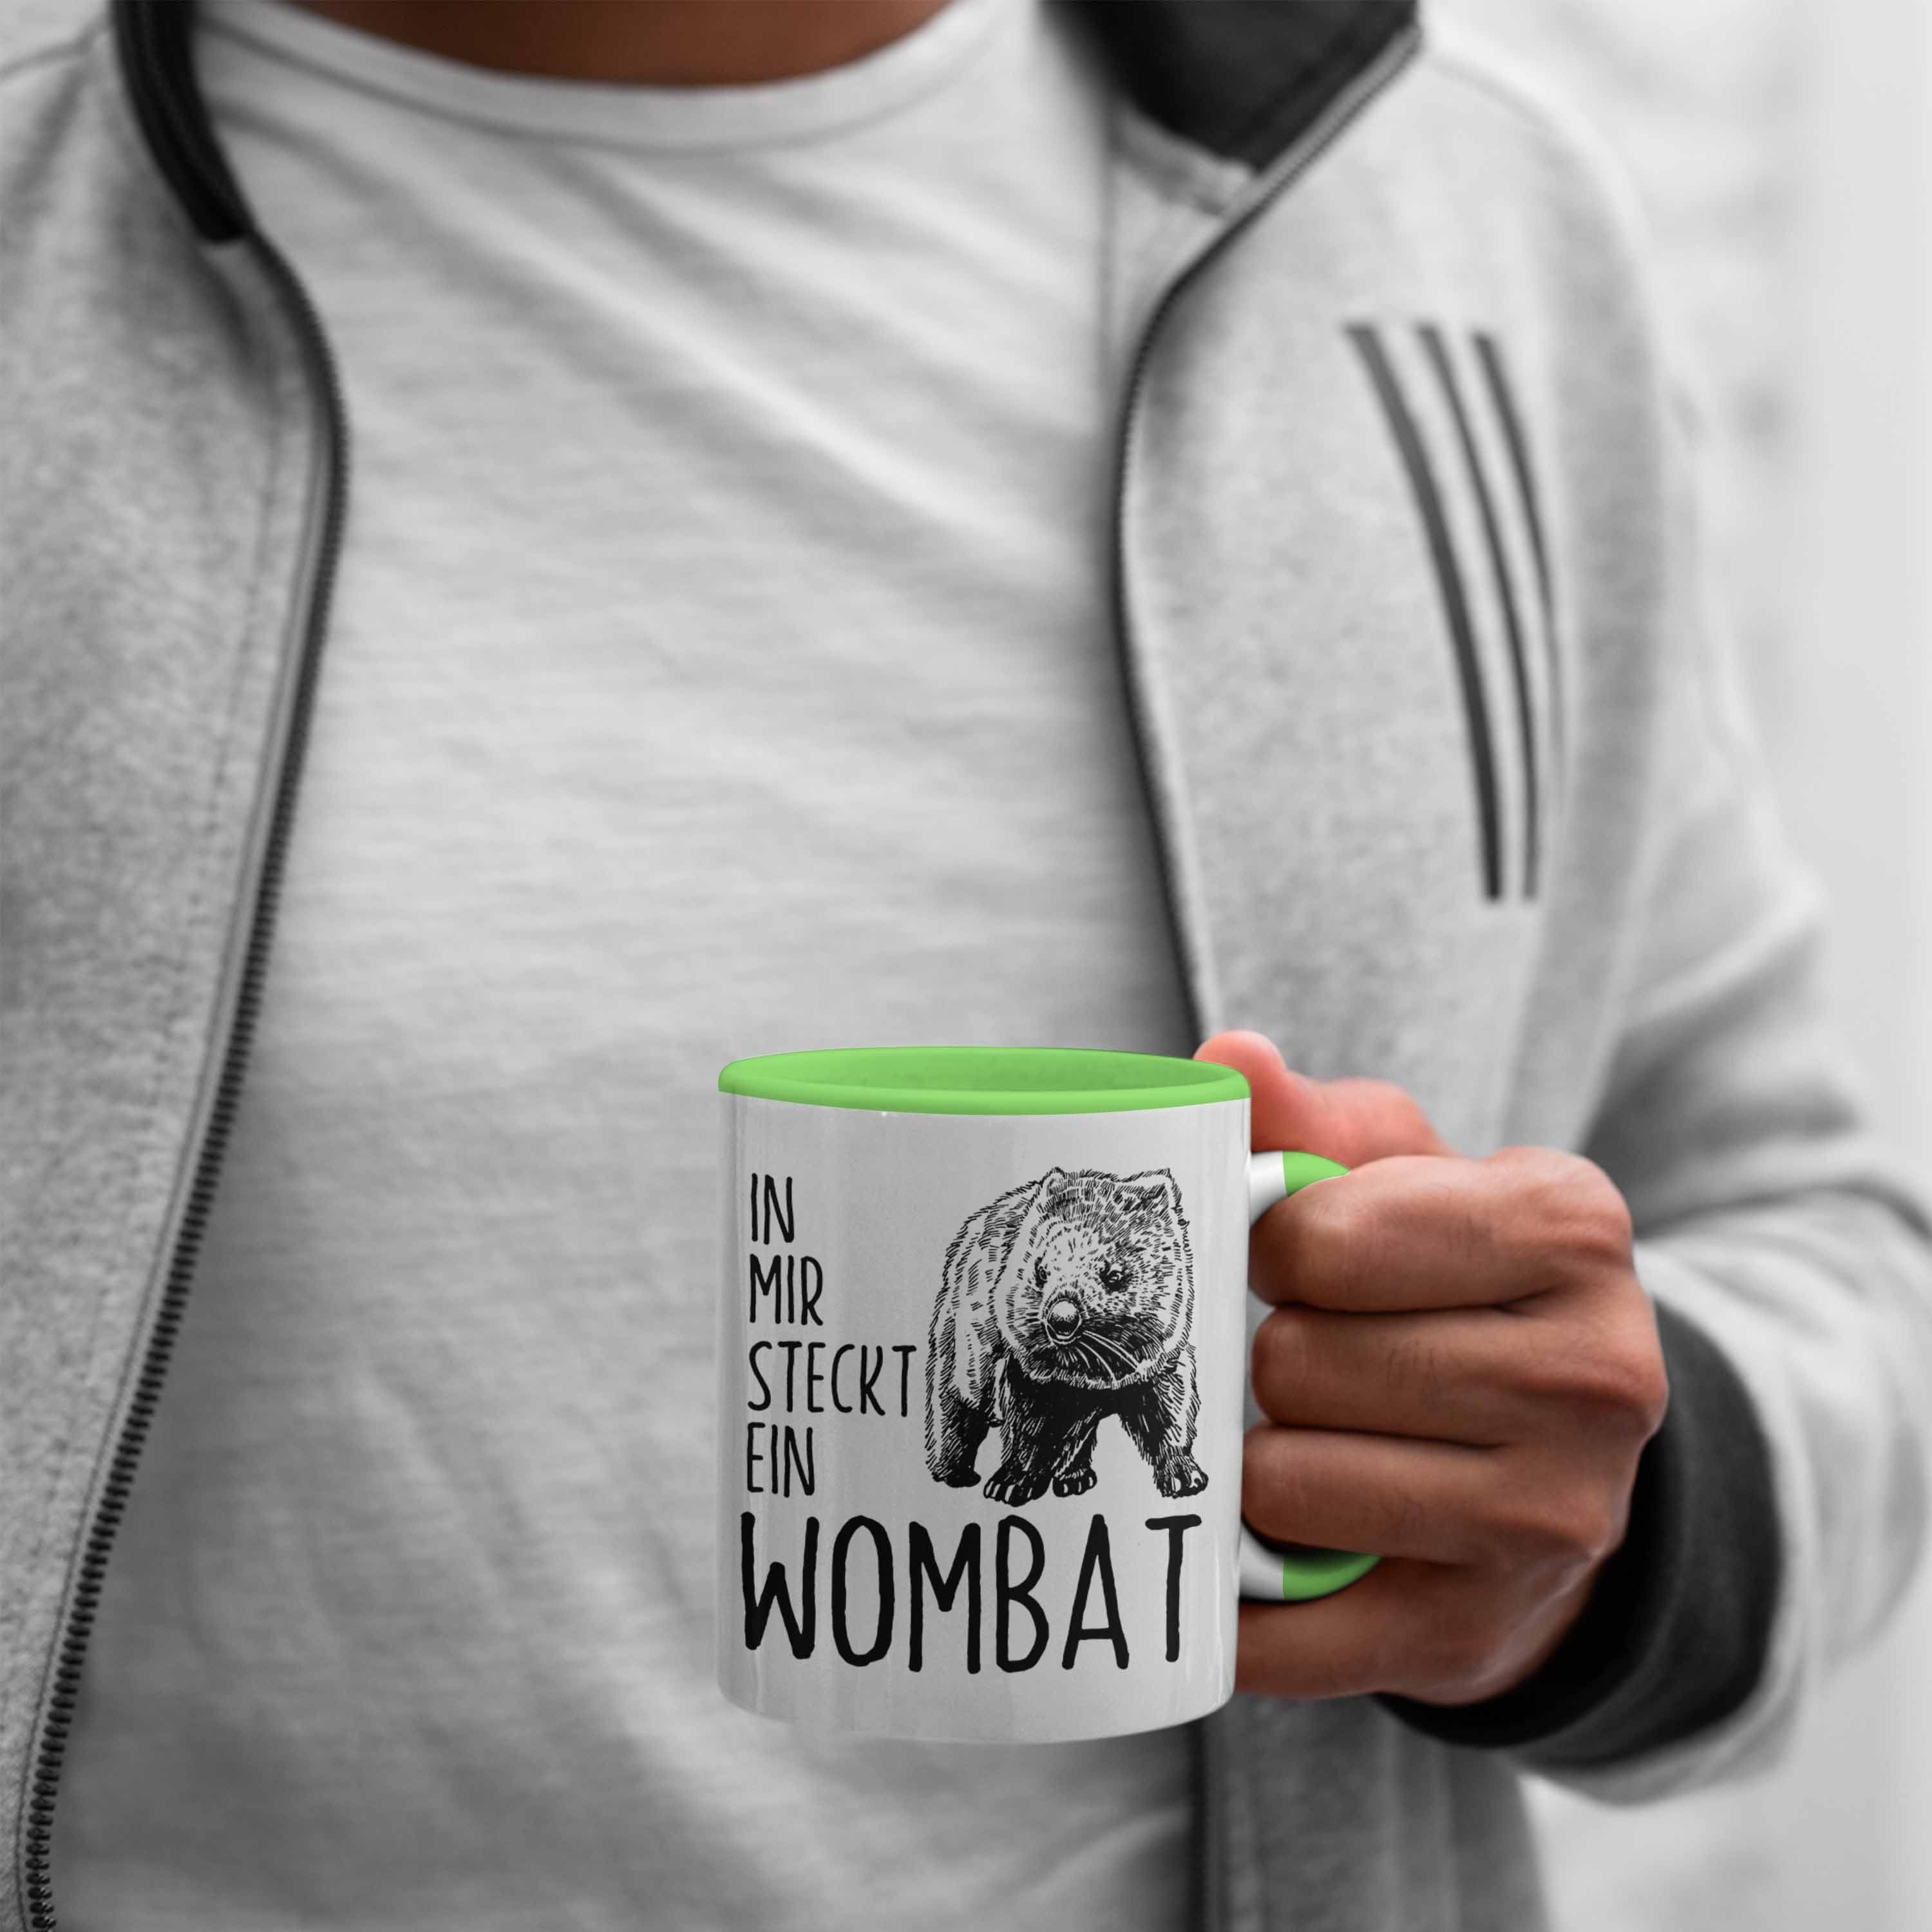 Trendation Tasse Wombat Tasse Wombat Mir Geschenk Liebhaber In für Ein Steckt Wombat Grün